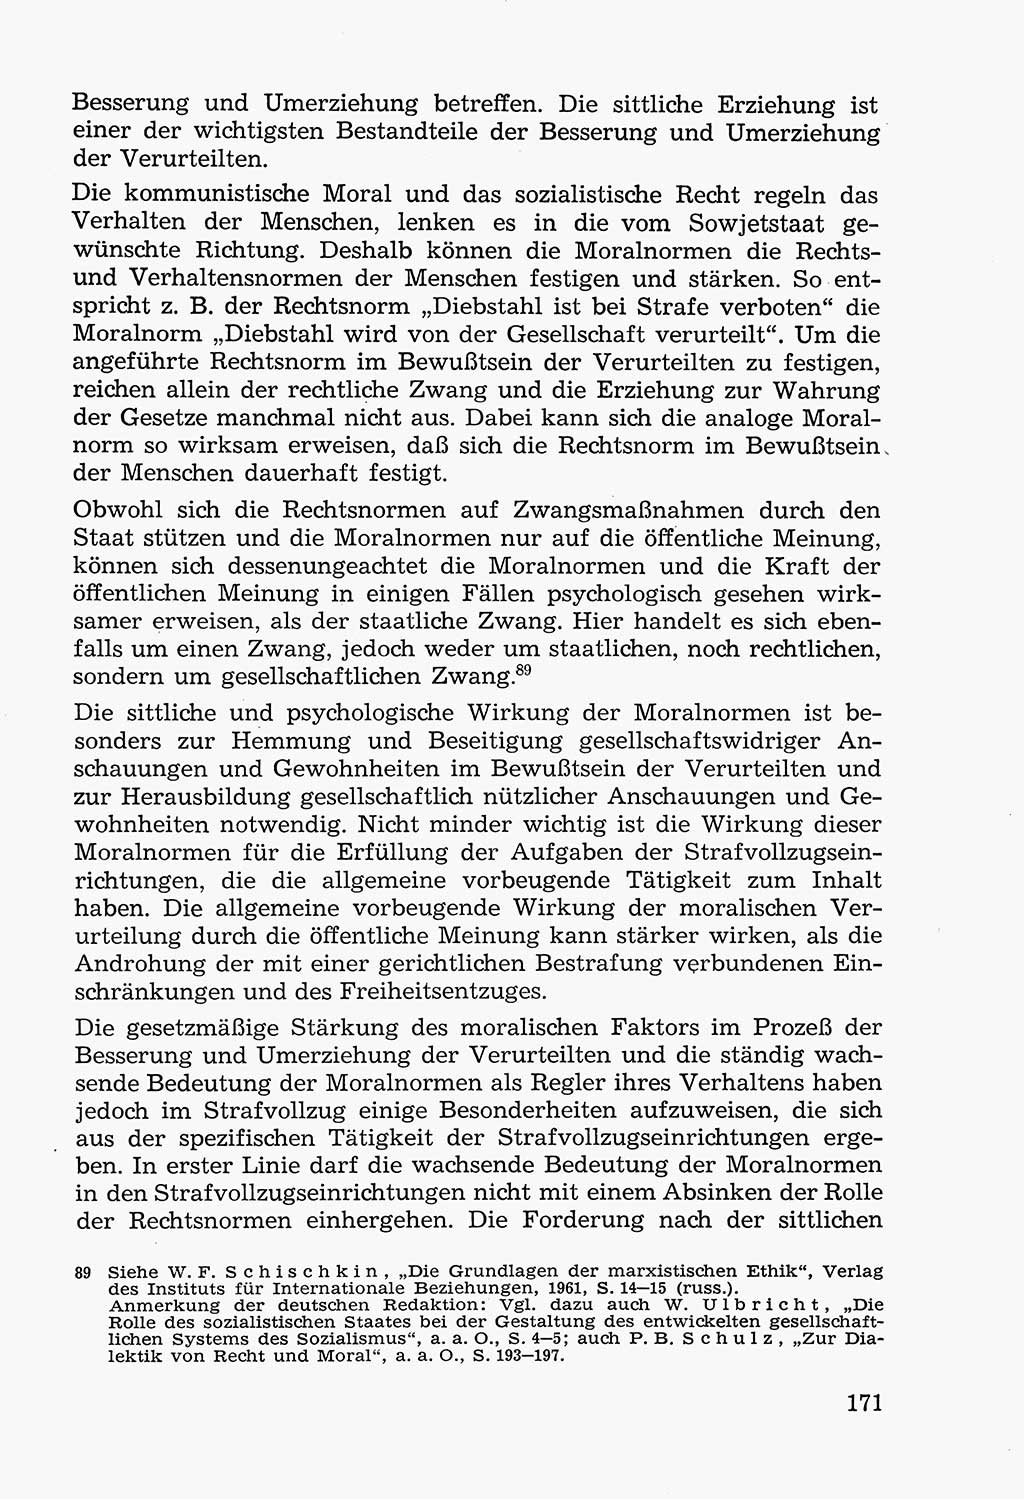 Lehrbuch der Strafvollzugspädagogik [Deutsche Demokratische Republik (DDR)] 1969, Seite 171 (Lb. SV-Pd. DDR 1969, S. 171)